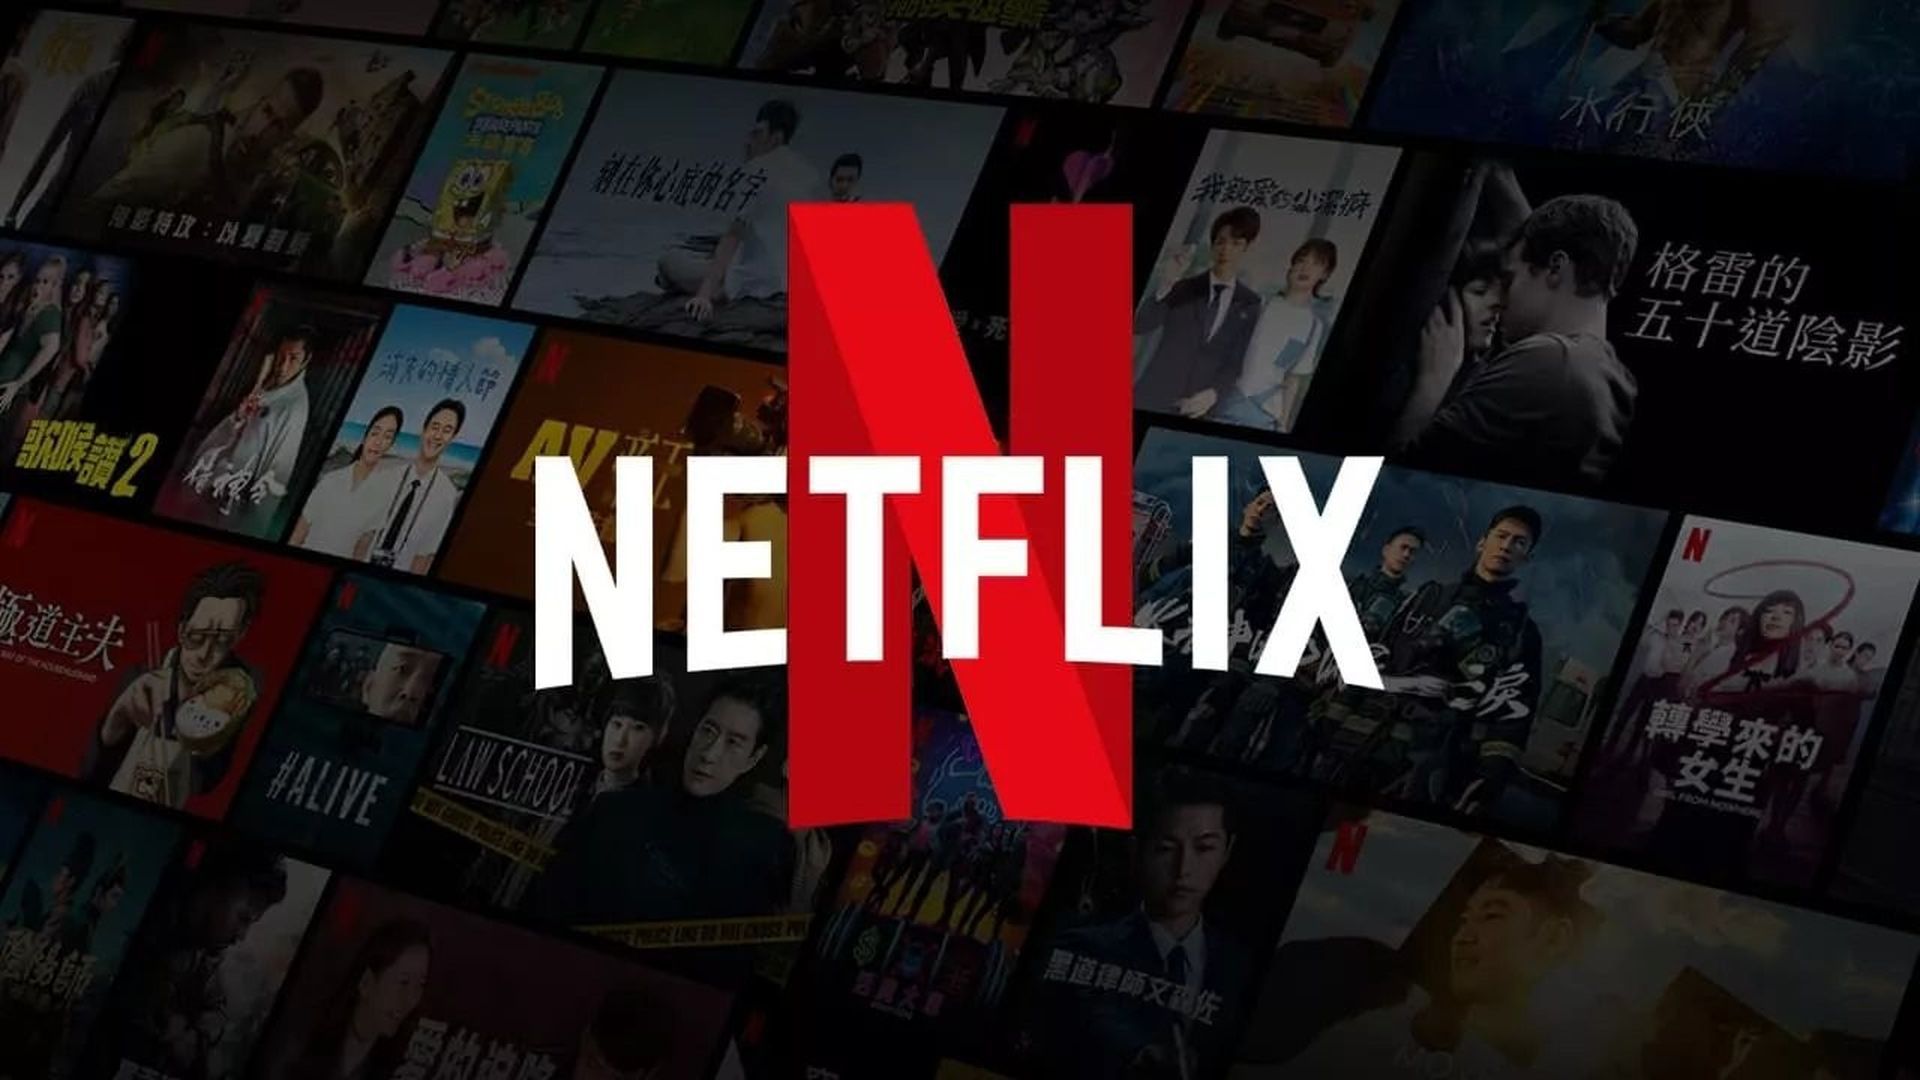 Рид Хастингс, генеральный директор Netflix, покидает свой пост